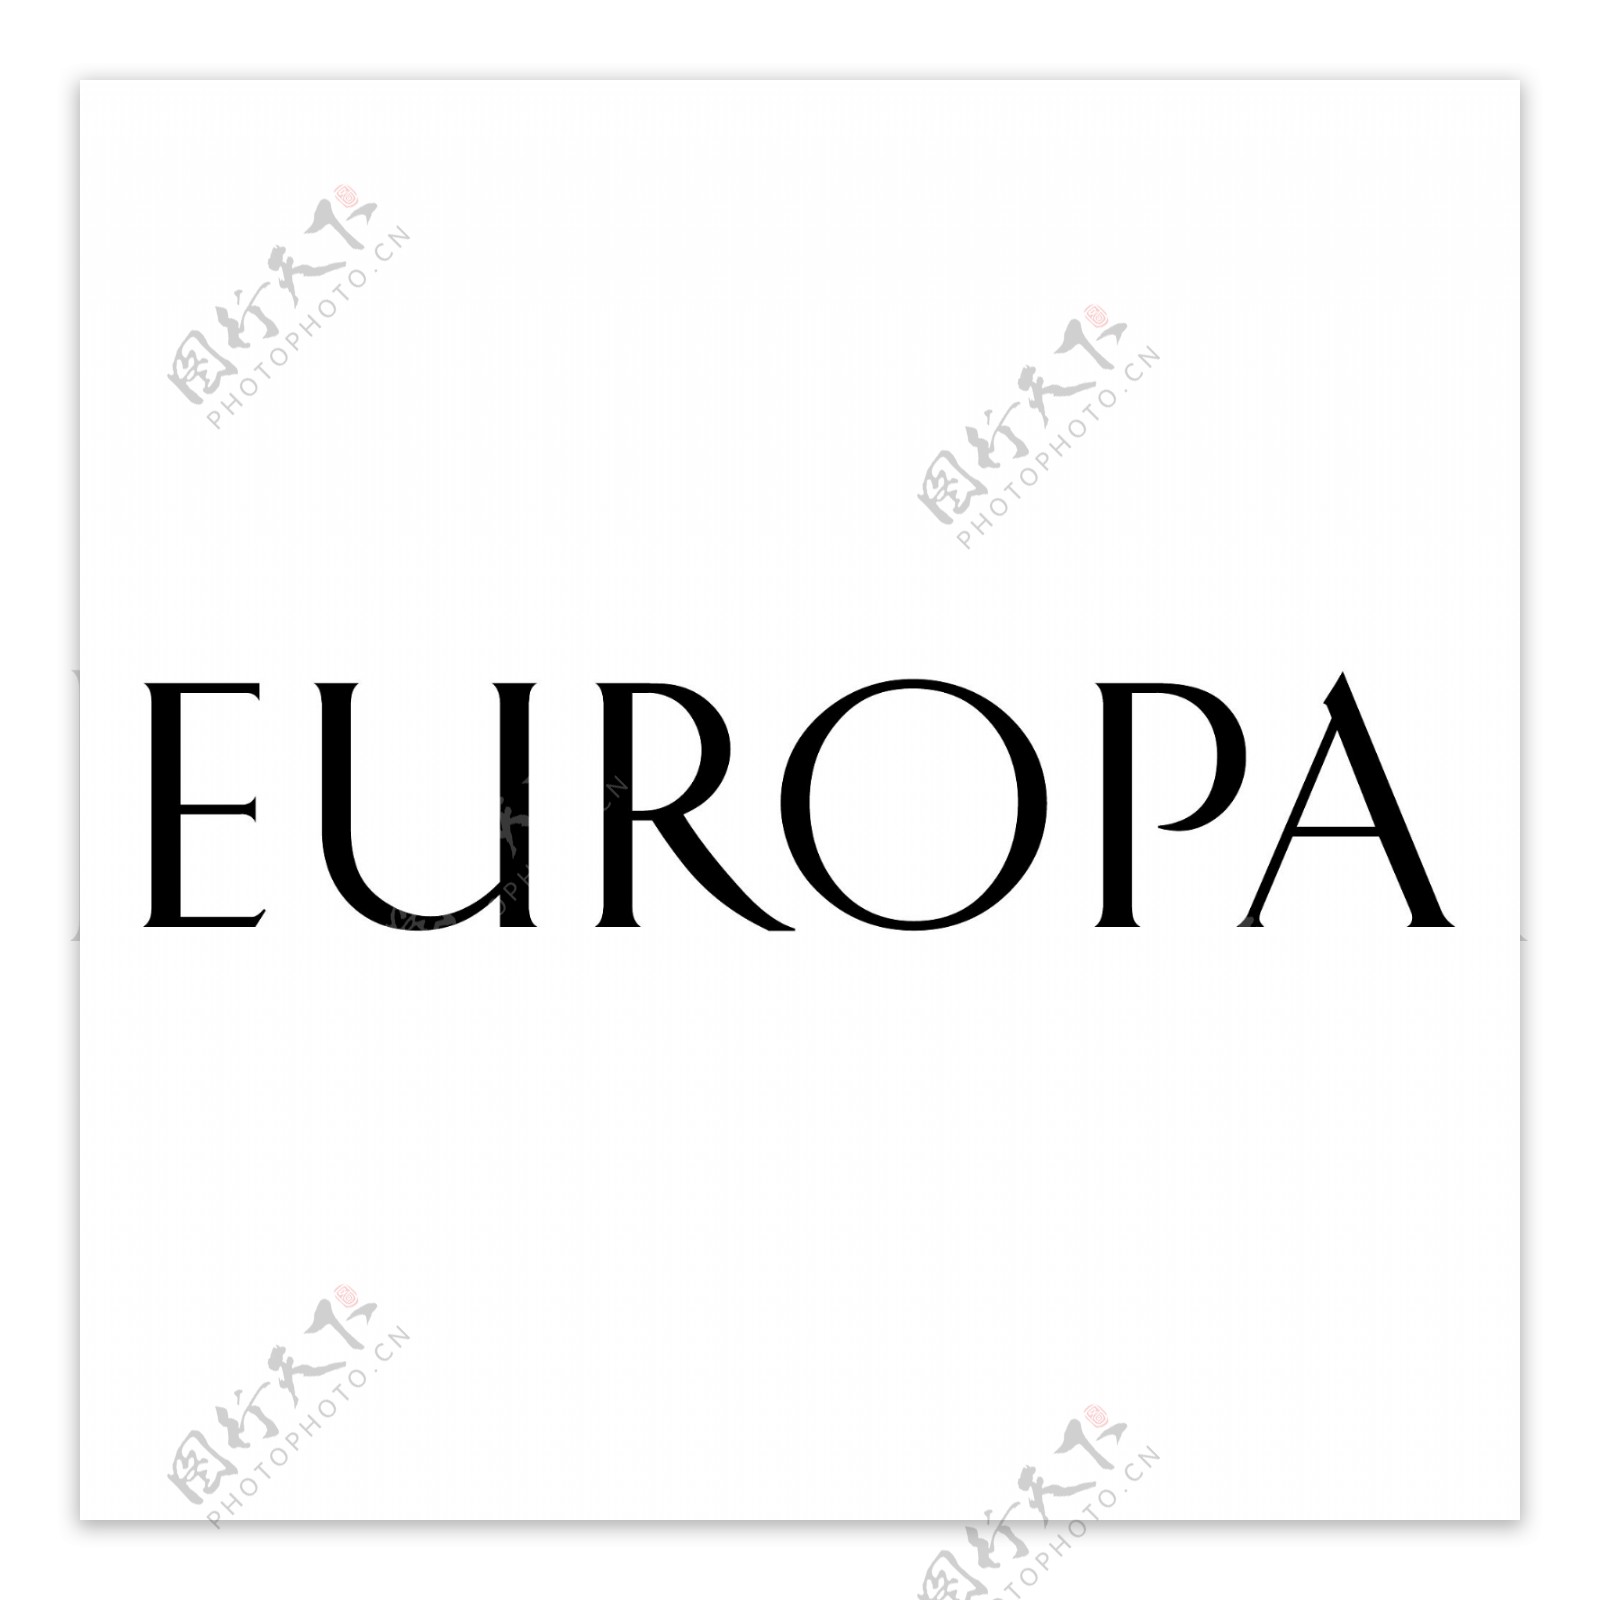 欧罗巴群岛地图_欧洲地图库_地图窝